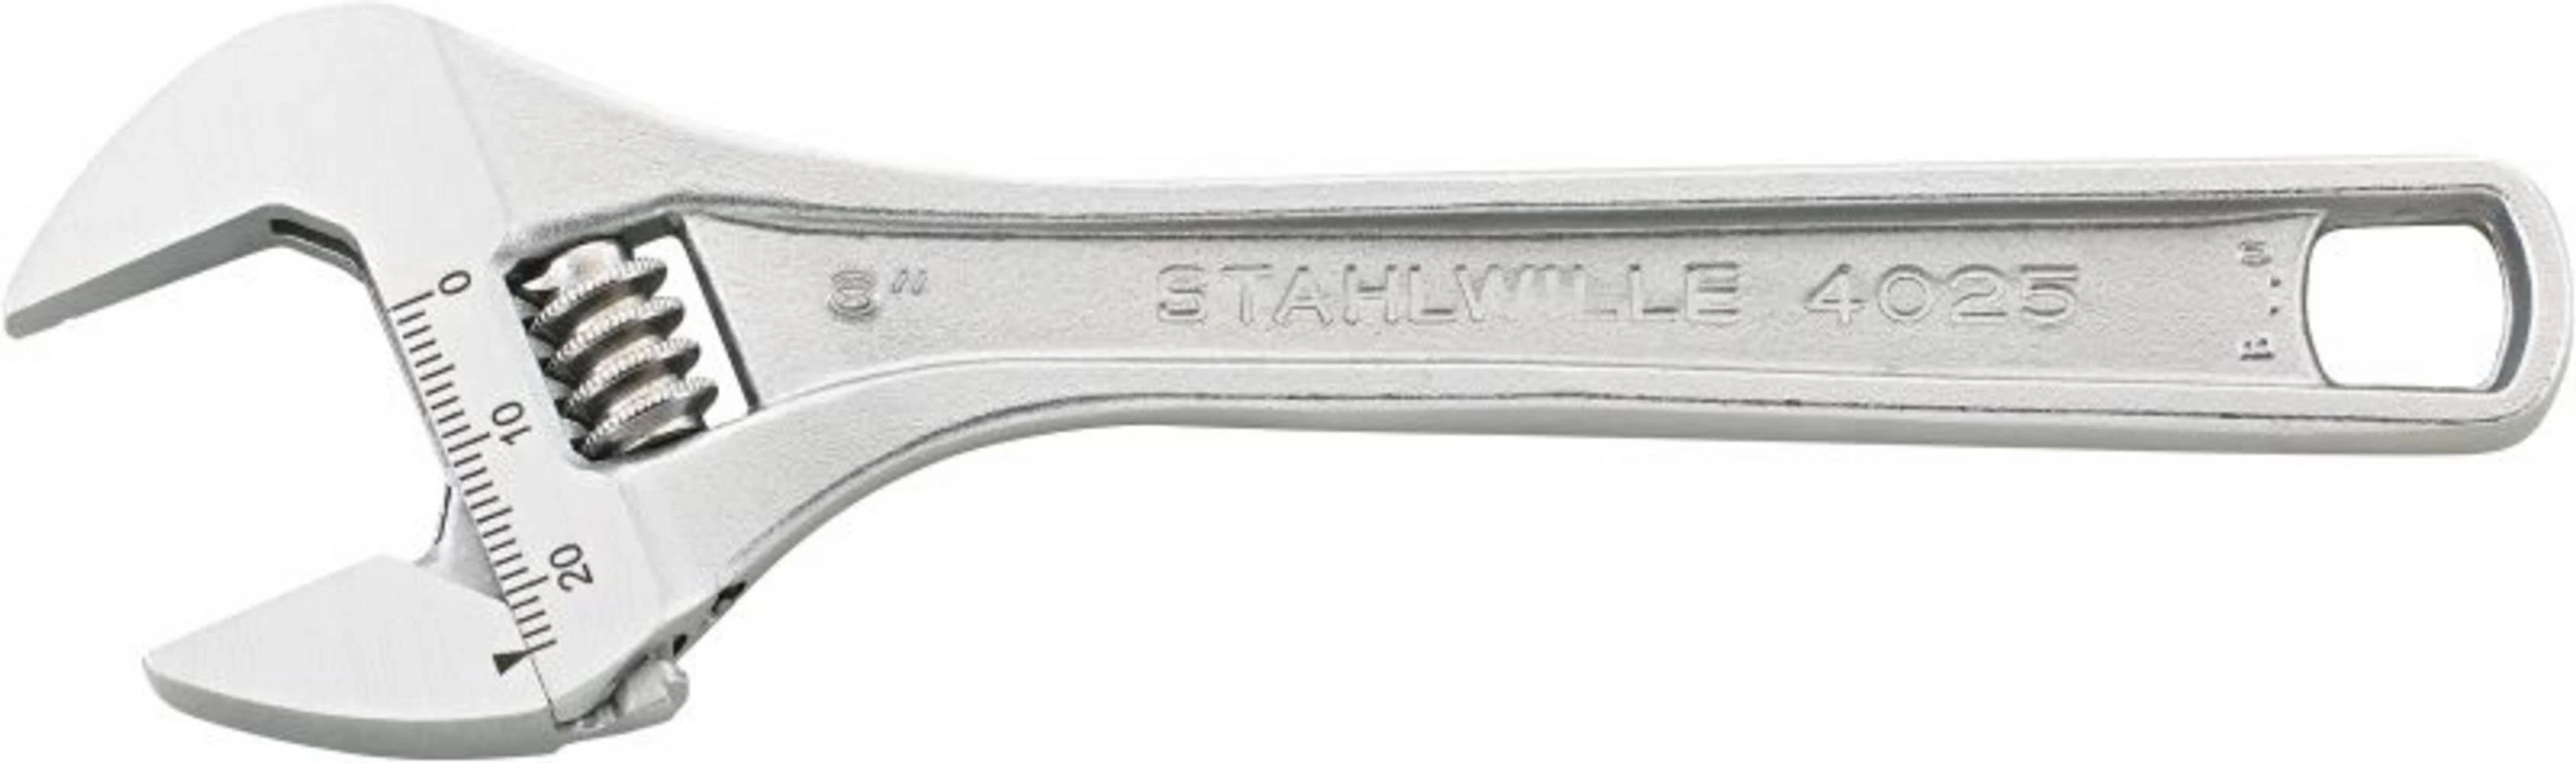 STAHLWILLE 40250110 Schraubenschlüssel, Silber